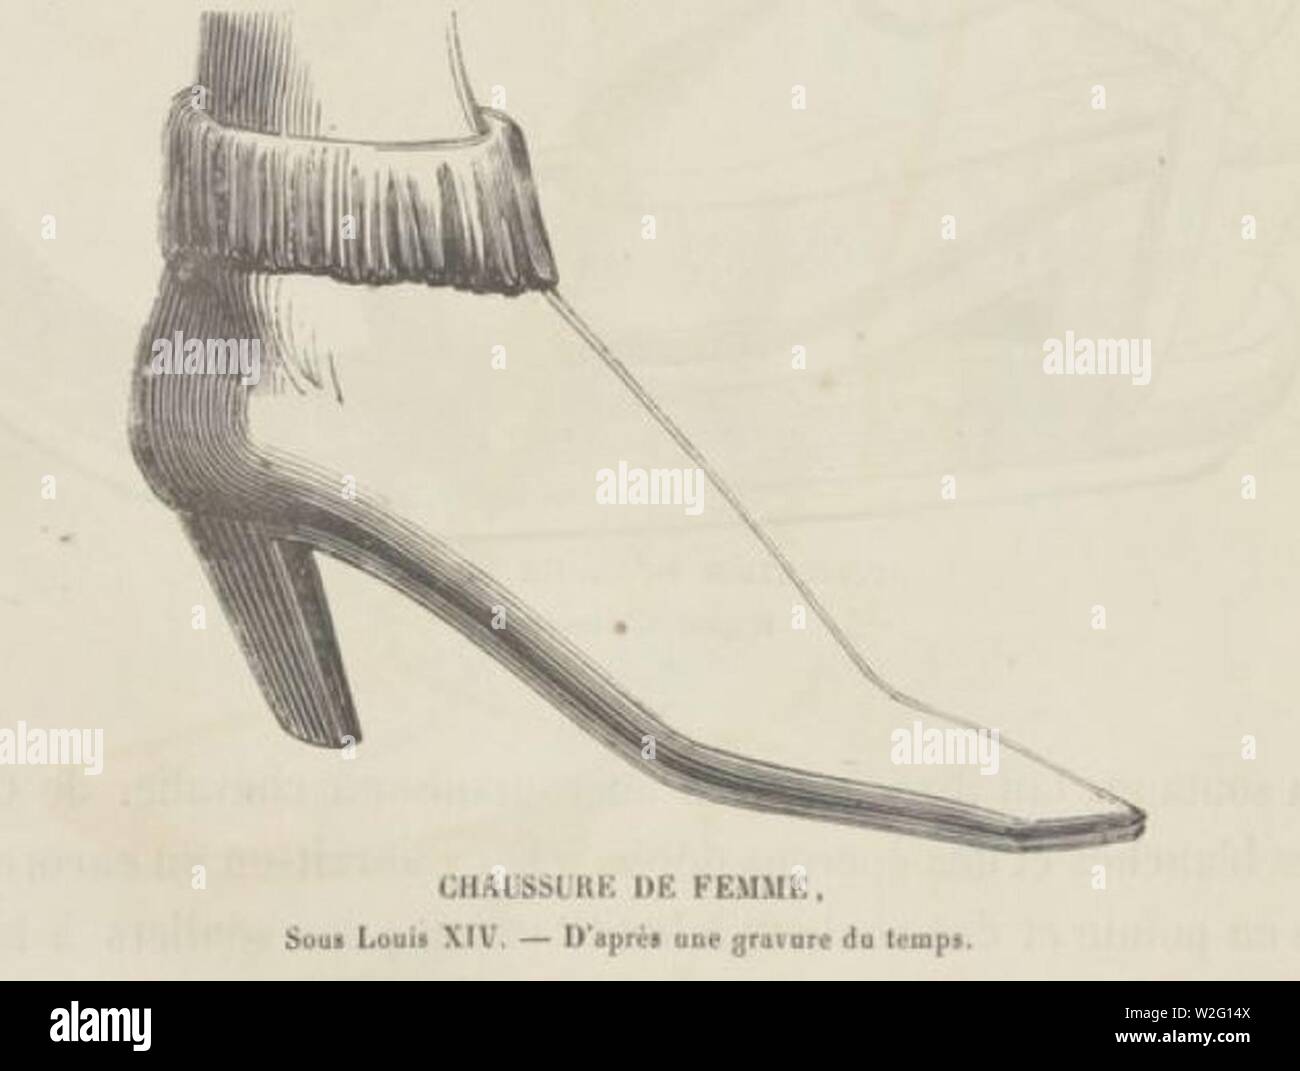 Chaussure de femme sous Louis XIV. Stock Photo